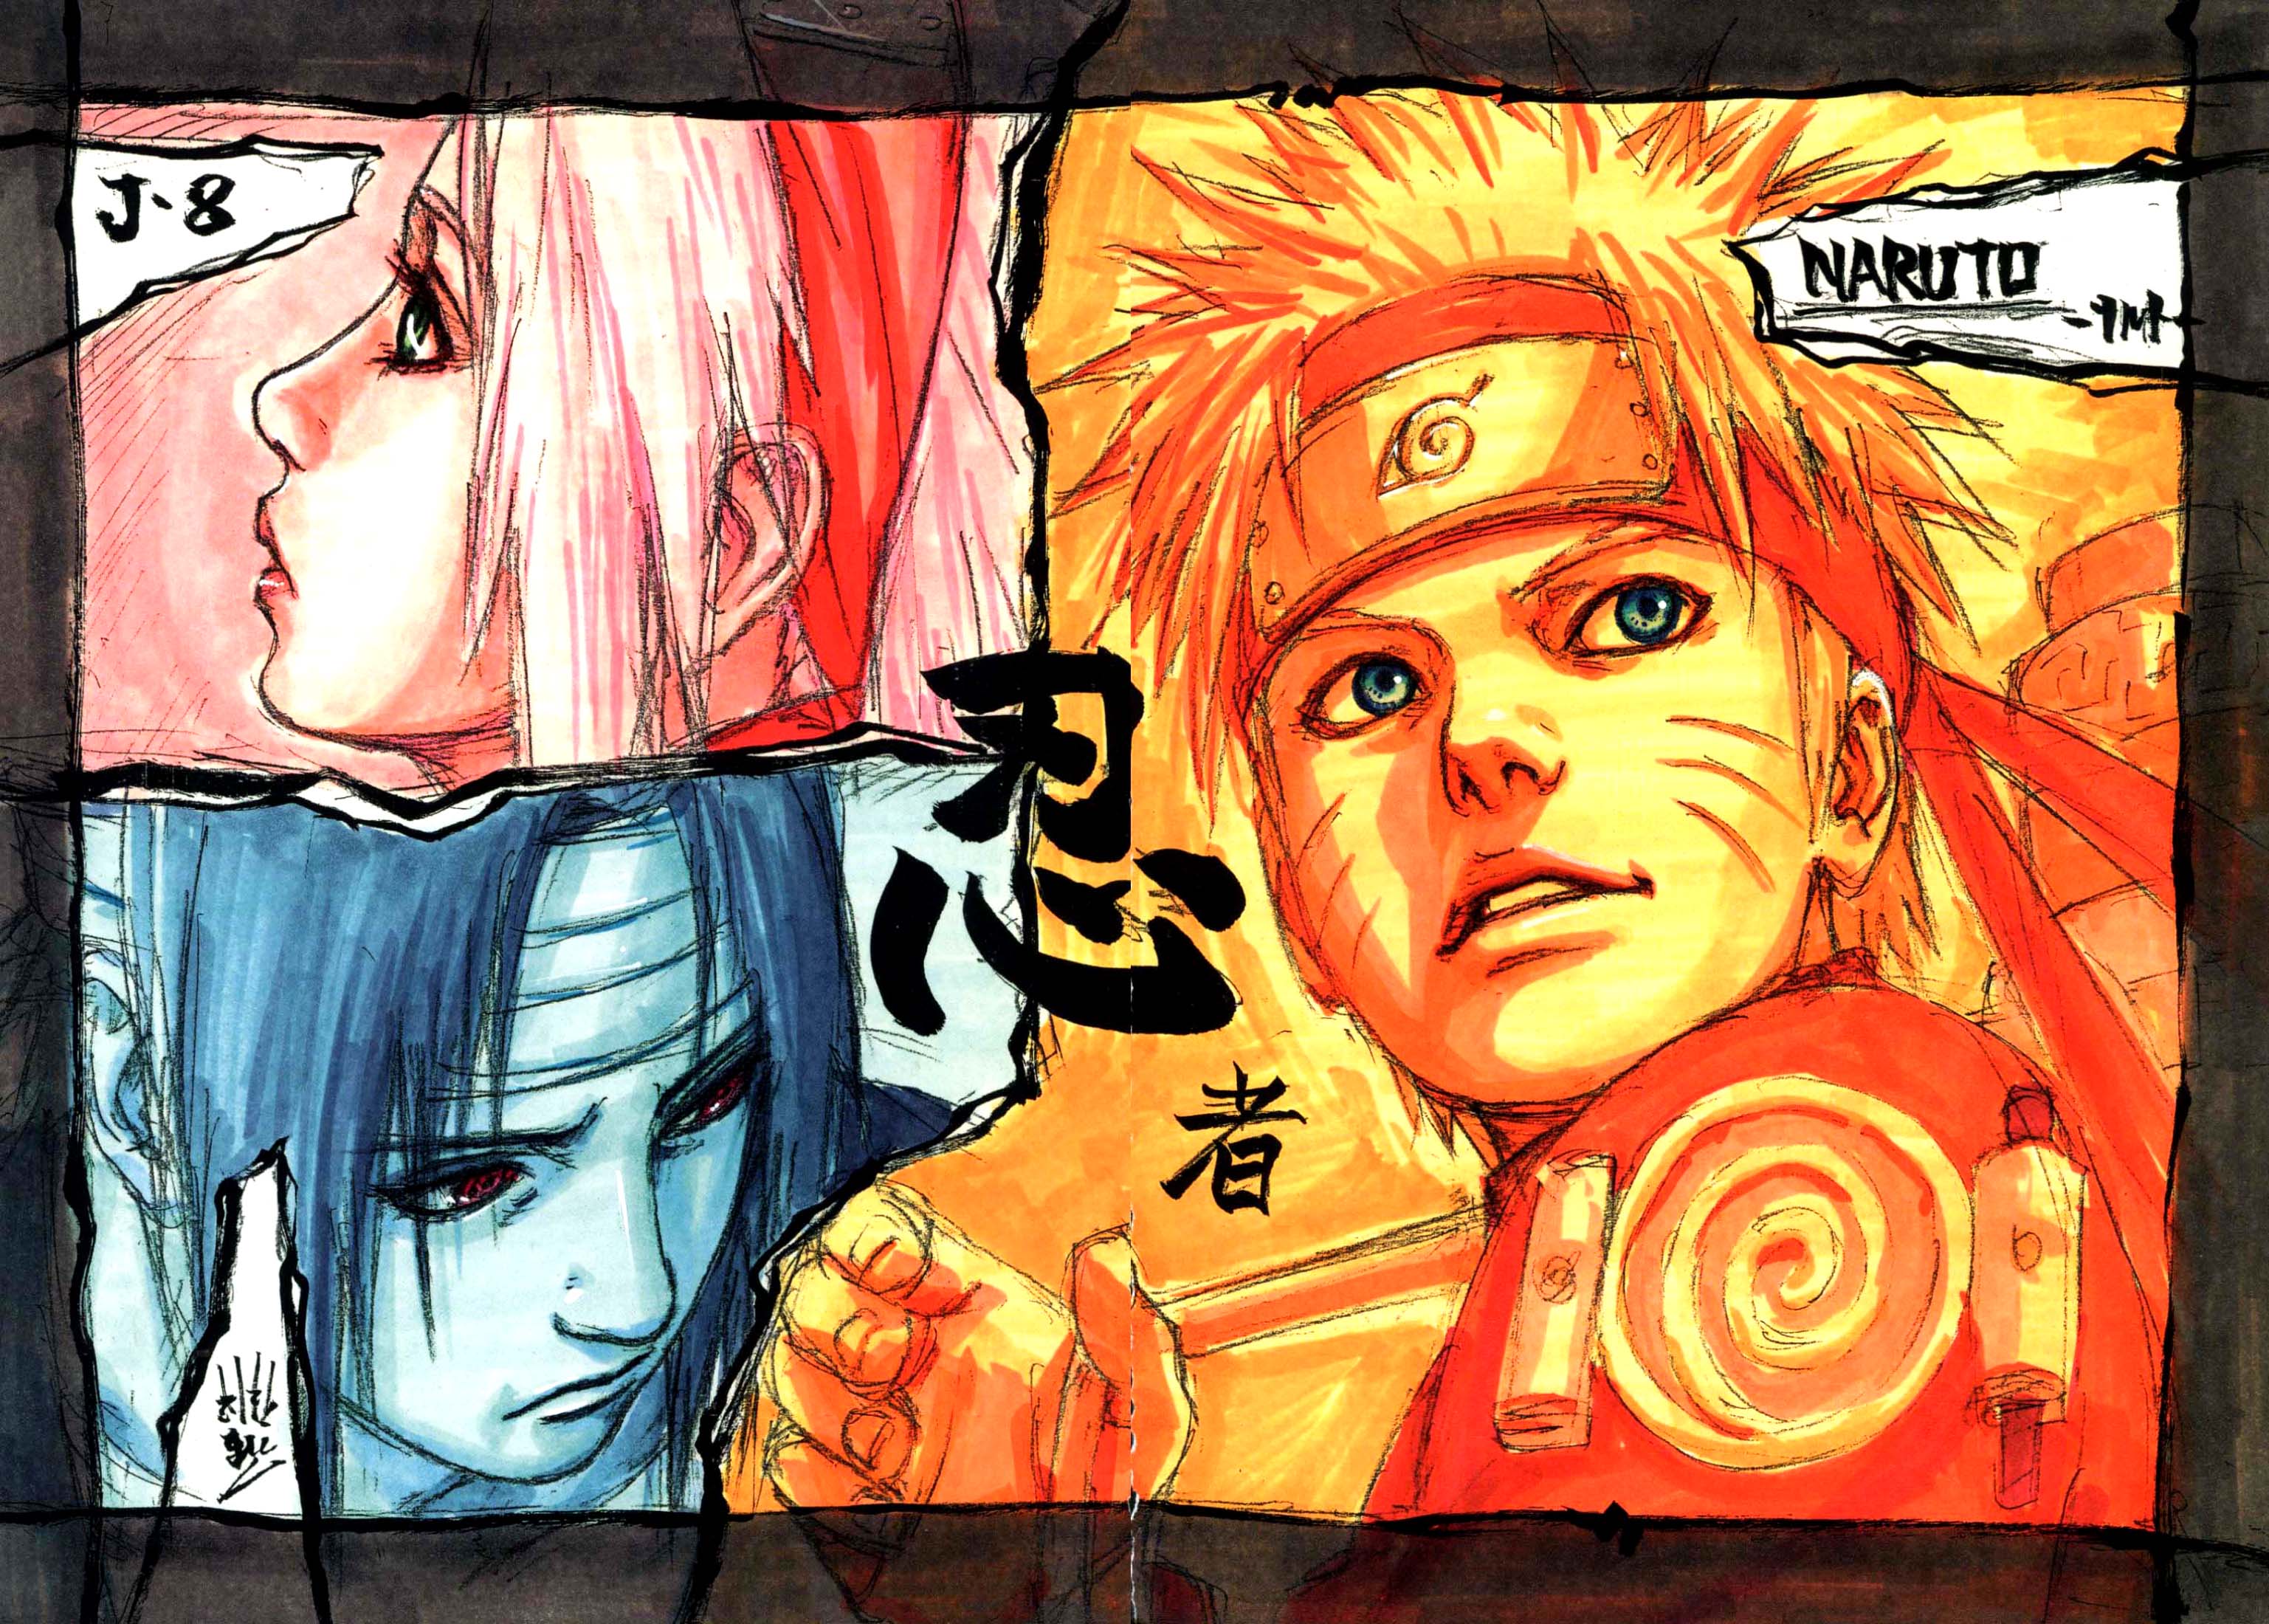 Манга Наруто Артбук 2 / The Art of Naruto: Naruto / Naruto Irasuto-shu: Nar...